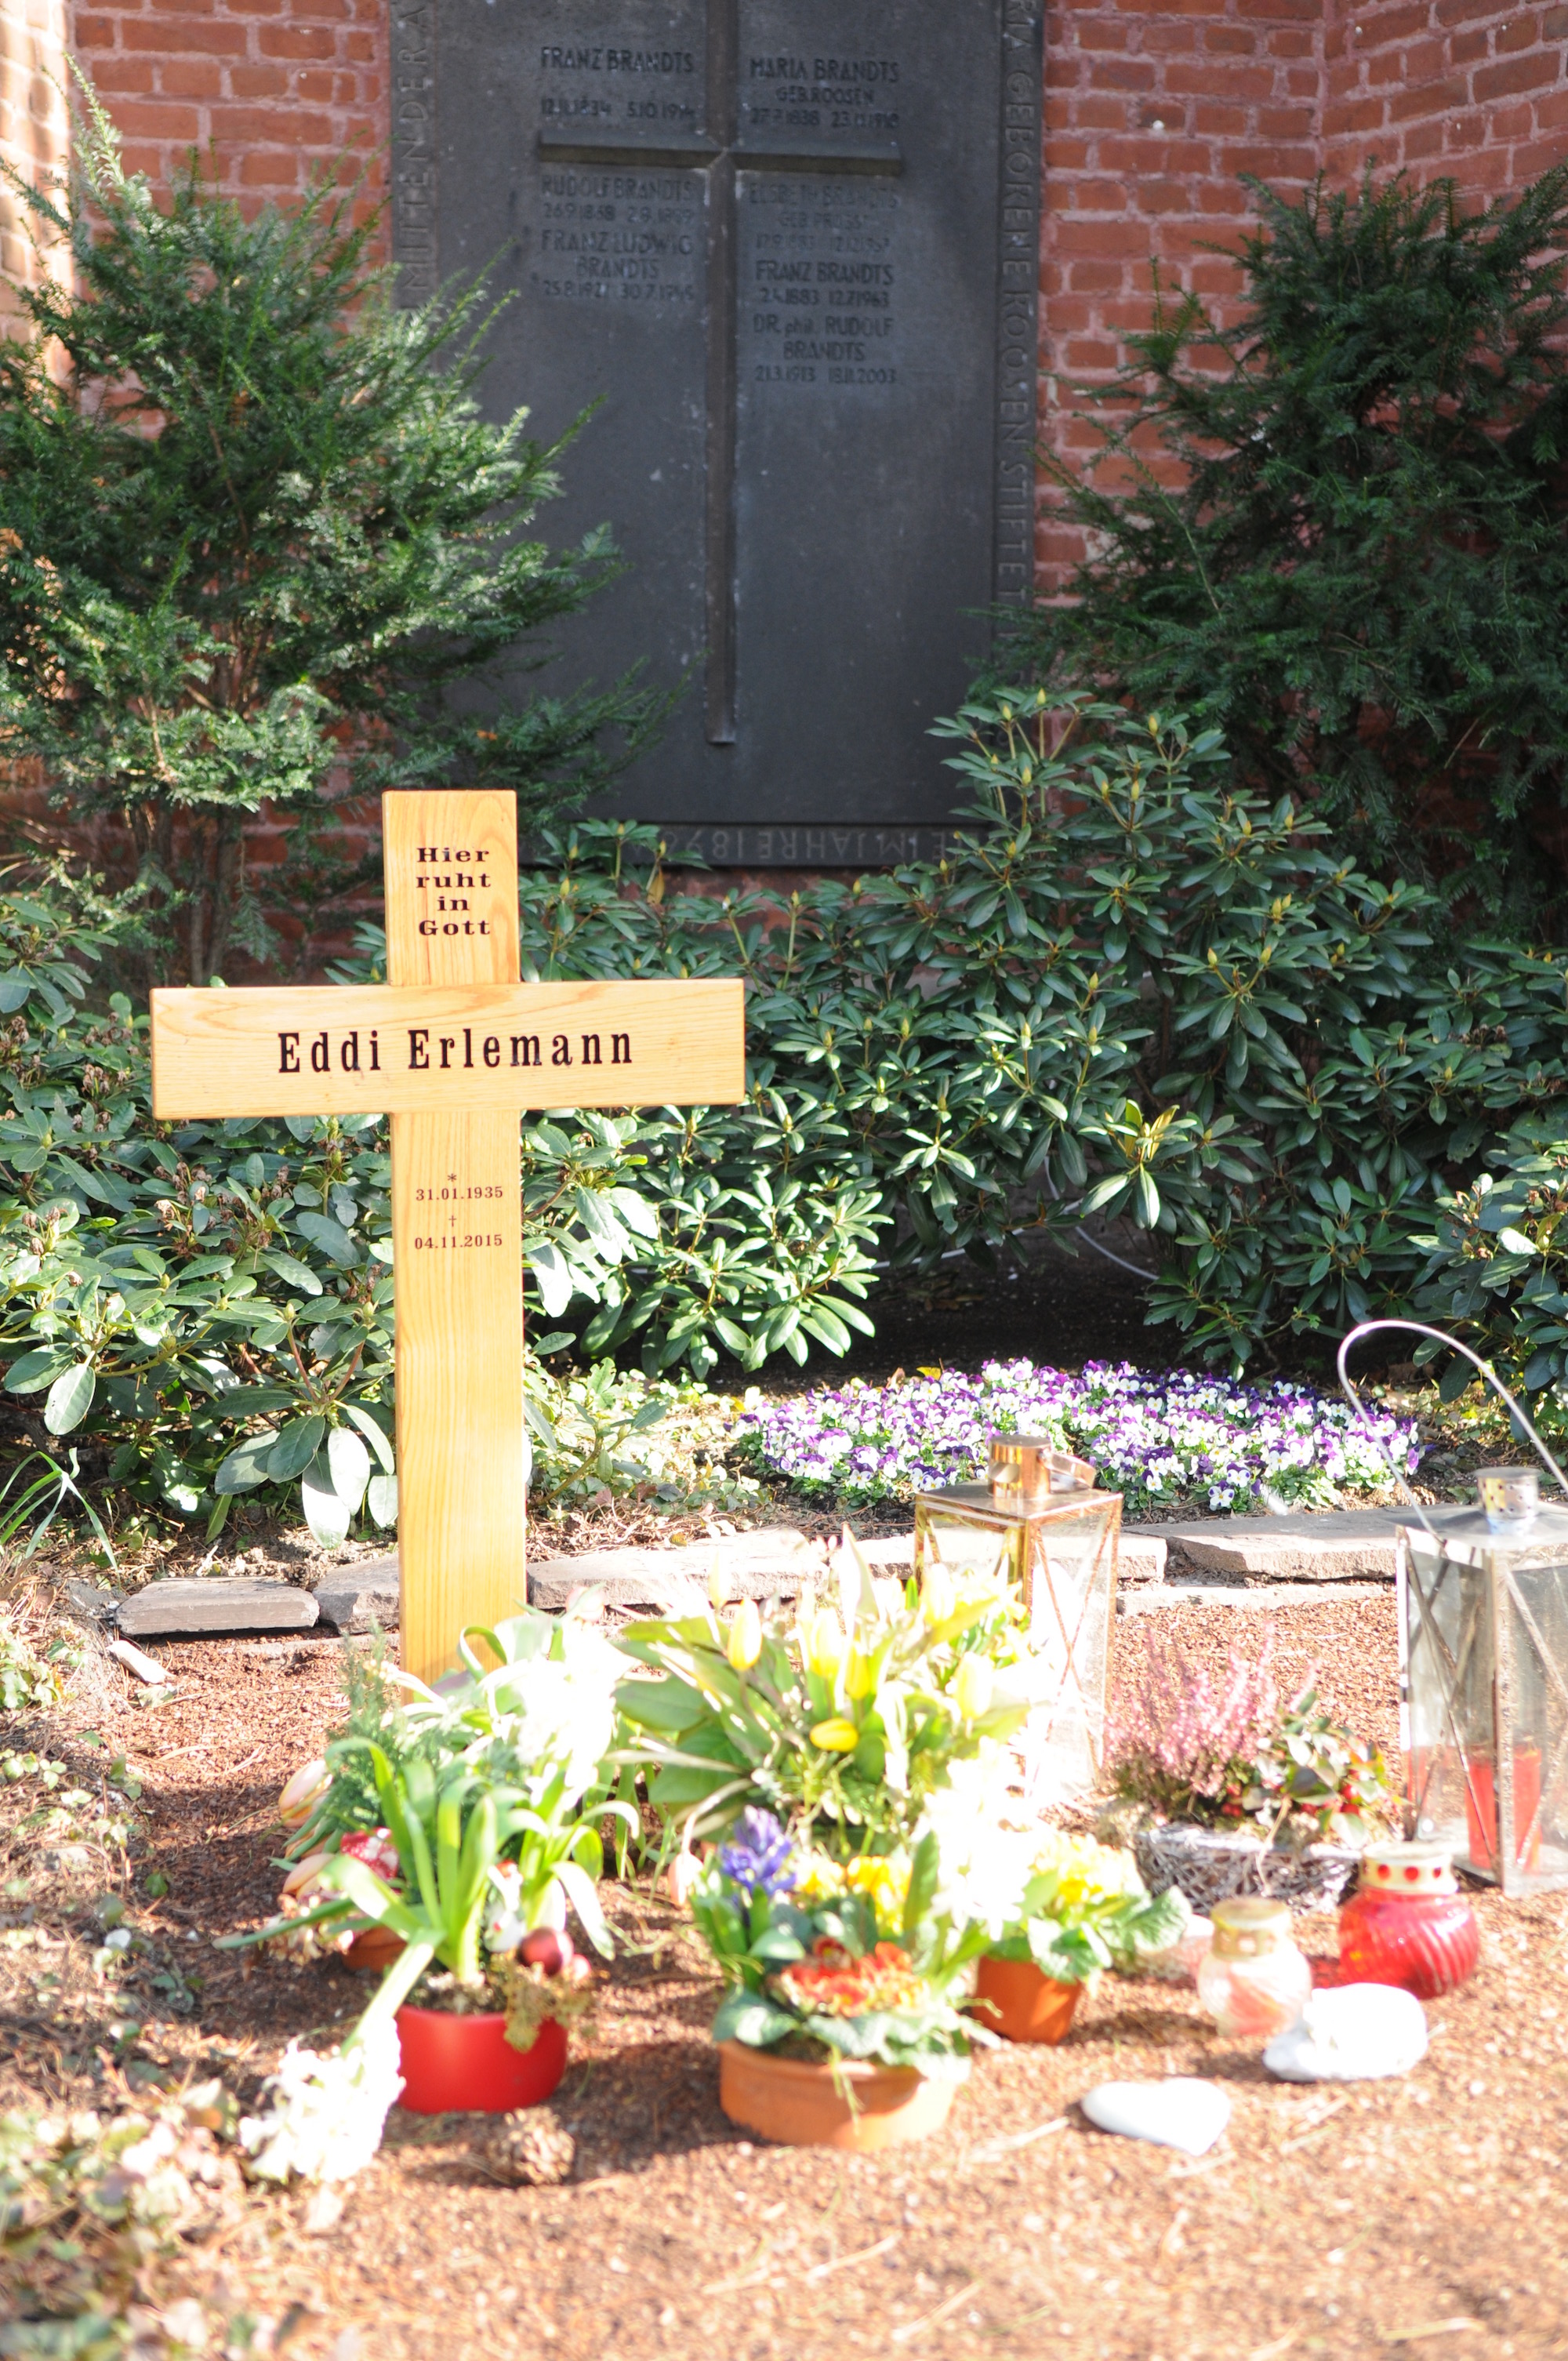 Ein schlichtes Holzkreuz erinnerte nach der Beerdigung an Eddi Erlemann. (c) Garnet Manecke